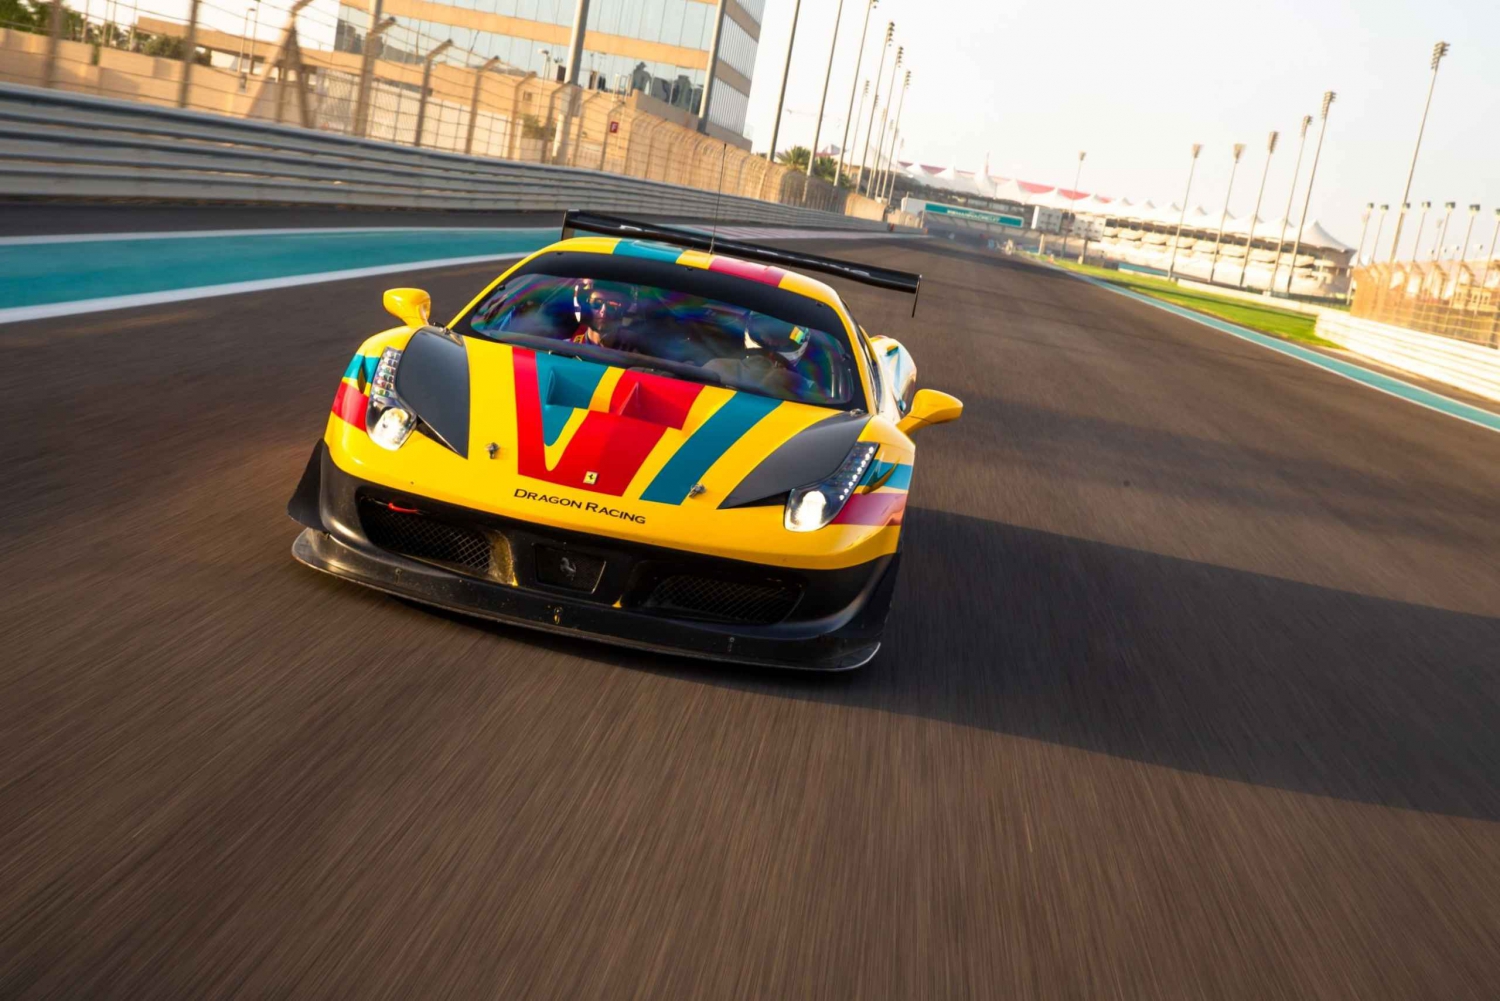 Dubai: Yas Marina Circuit Ferrari 458 GT Driving Experience